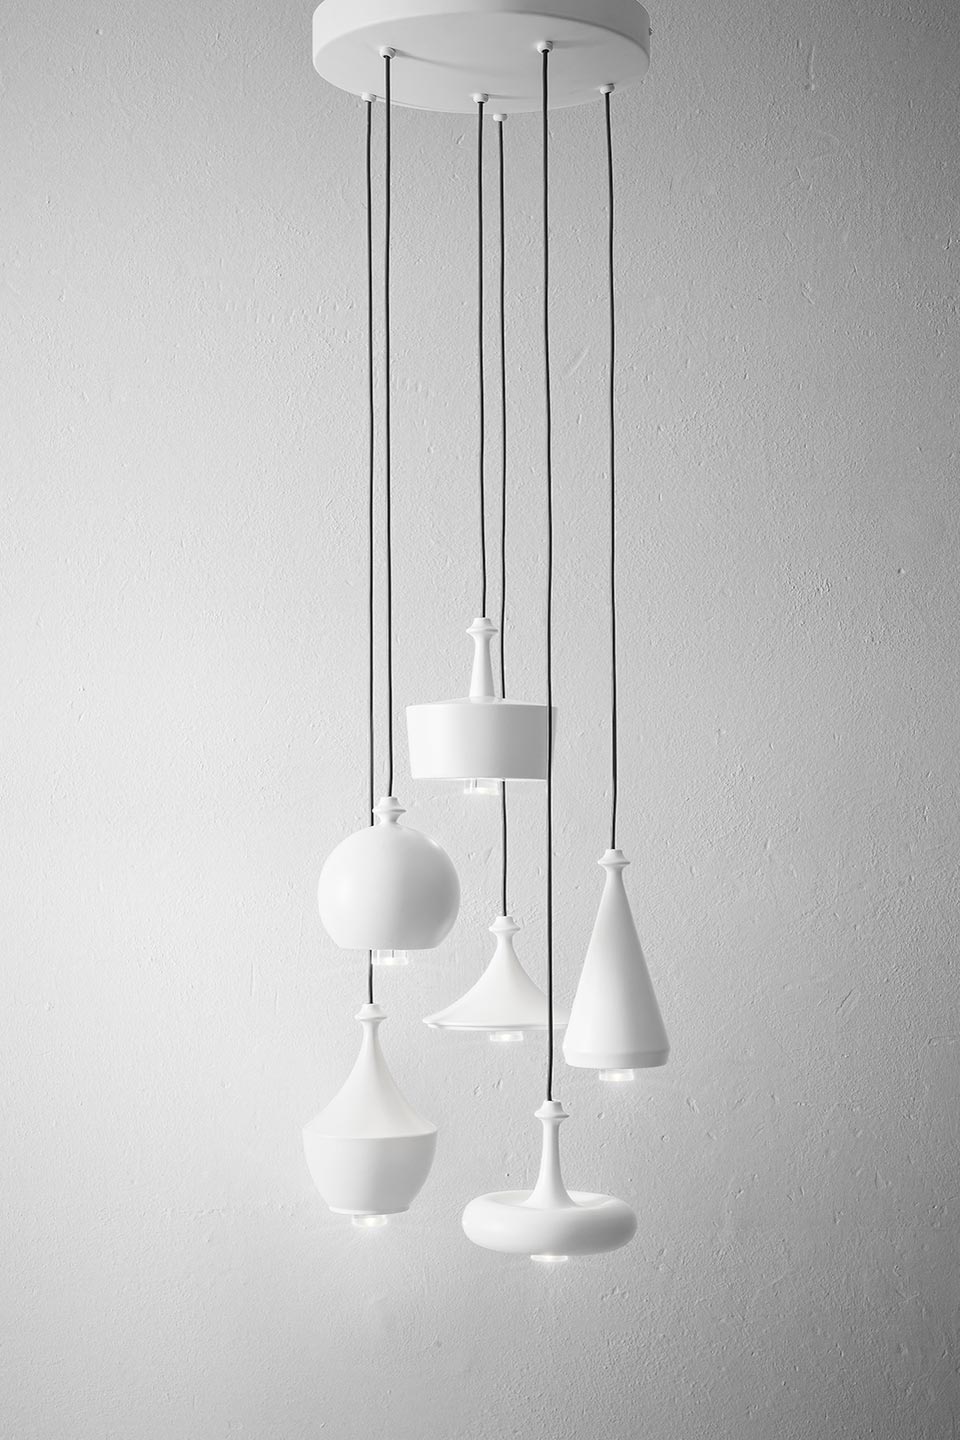 Lustrini suspension contemporaine 6 lumières blanc mat. Aldo Bernardi. 